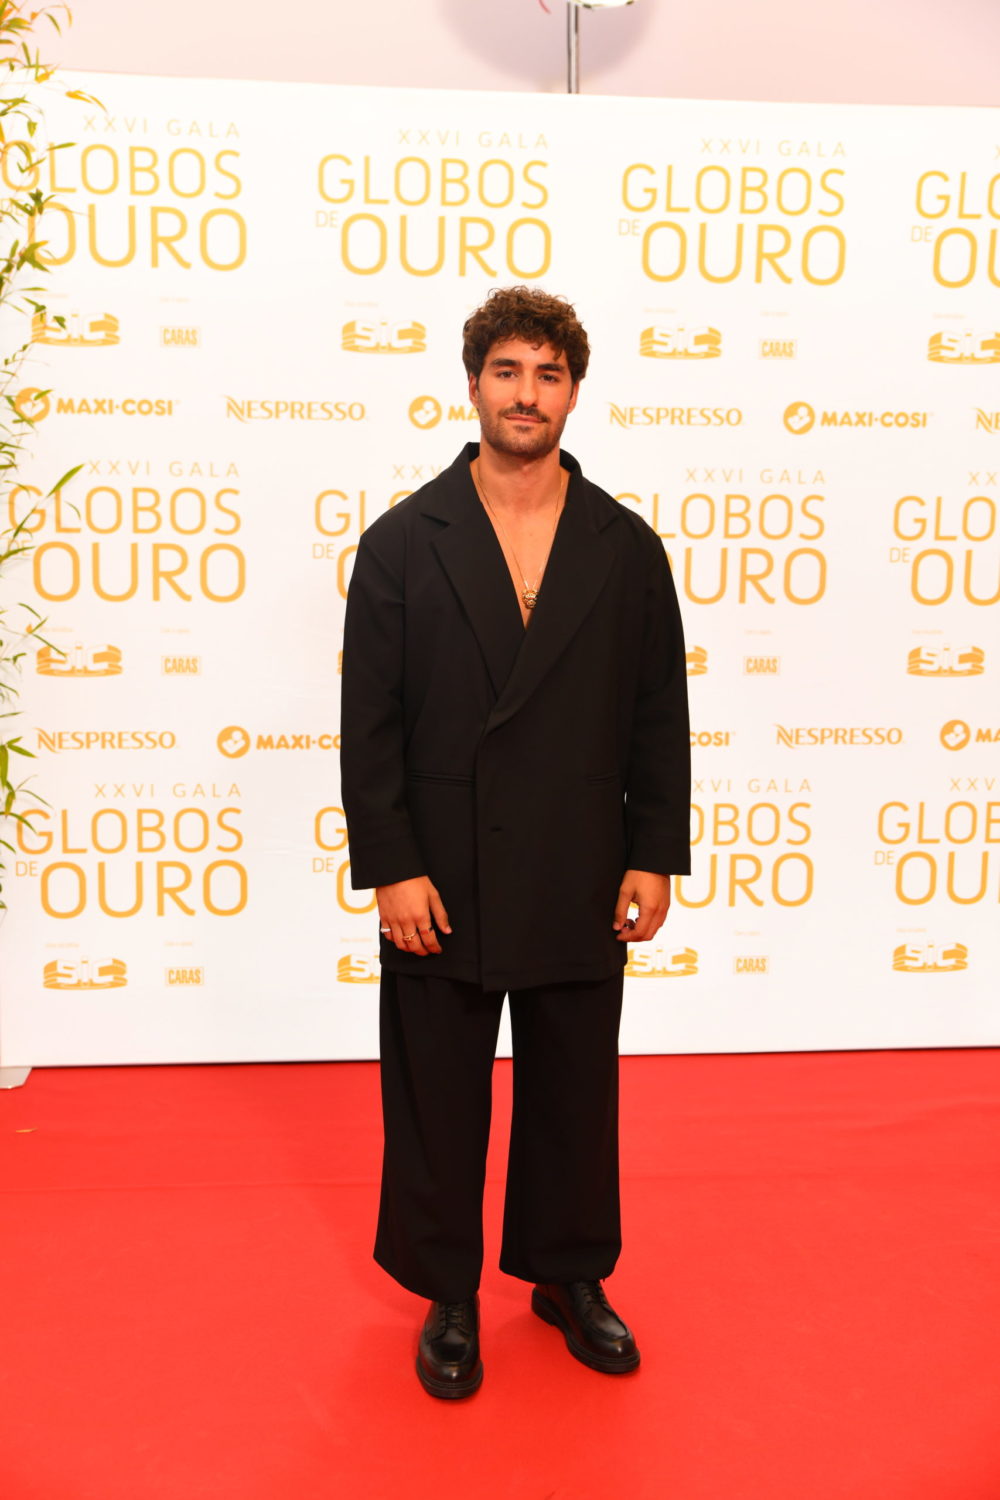 Globos de Ouro: Homens portugueses arrojam com visuais cheios de personalidade